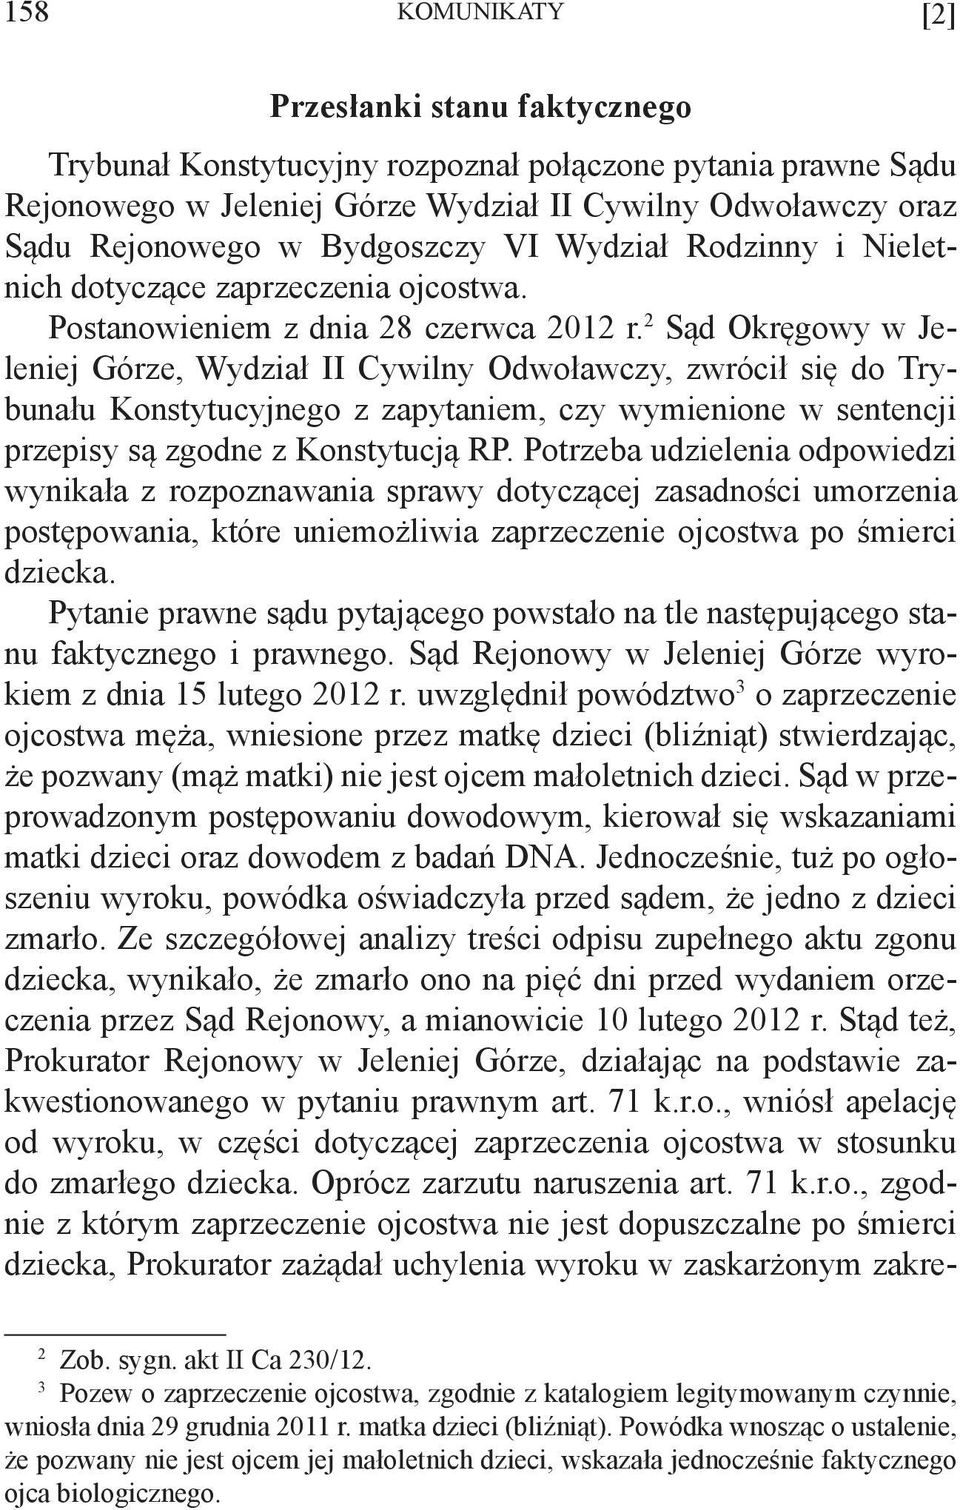 2 Sąd Okręgowy w Jeleniej Górze, Wydział II Cywilny Odwoławczy, zwrócił się do Trybunału Konstytucyjnego z zapytaniem, czy wymienione w sentencji przepisy są zgodne z Konstytucją RP.